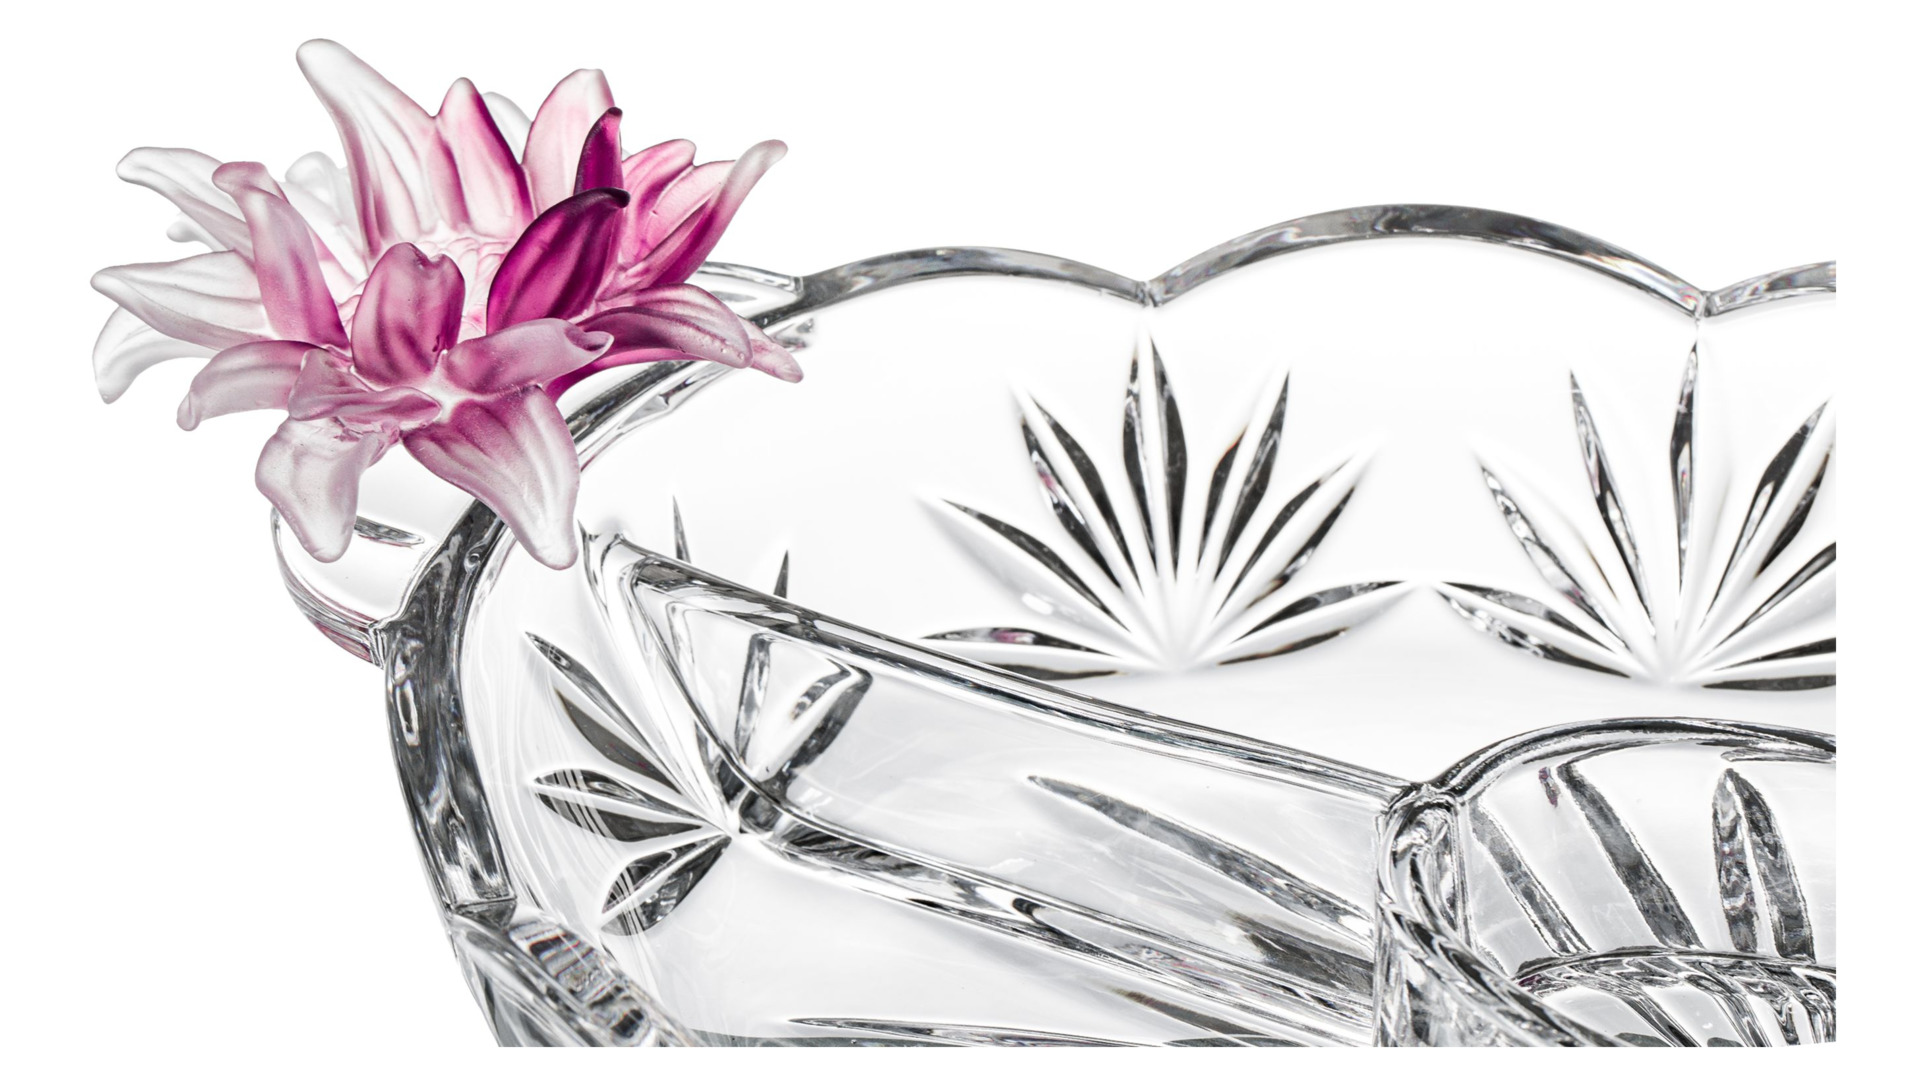 Менажница Cristal de Paris Сохо, Маргаритка 35х35х11 см, пурпурый цветок